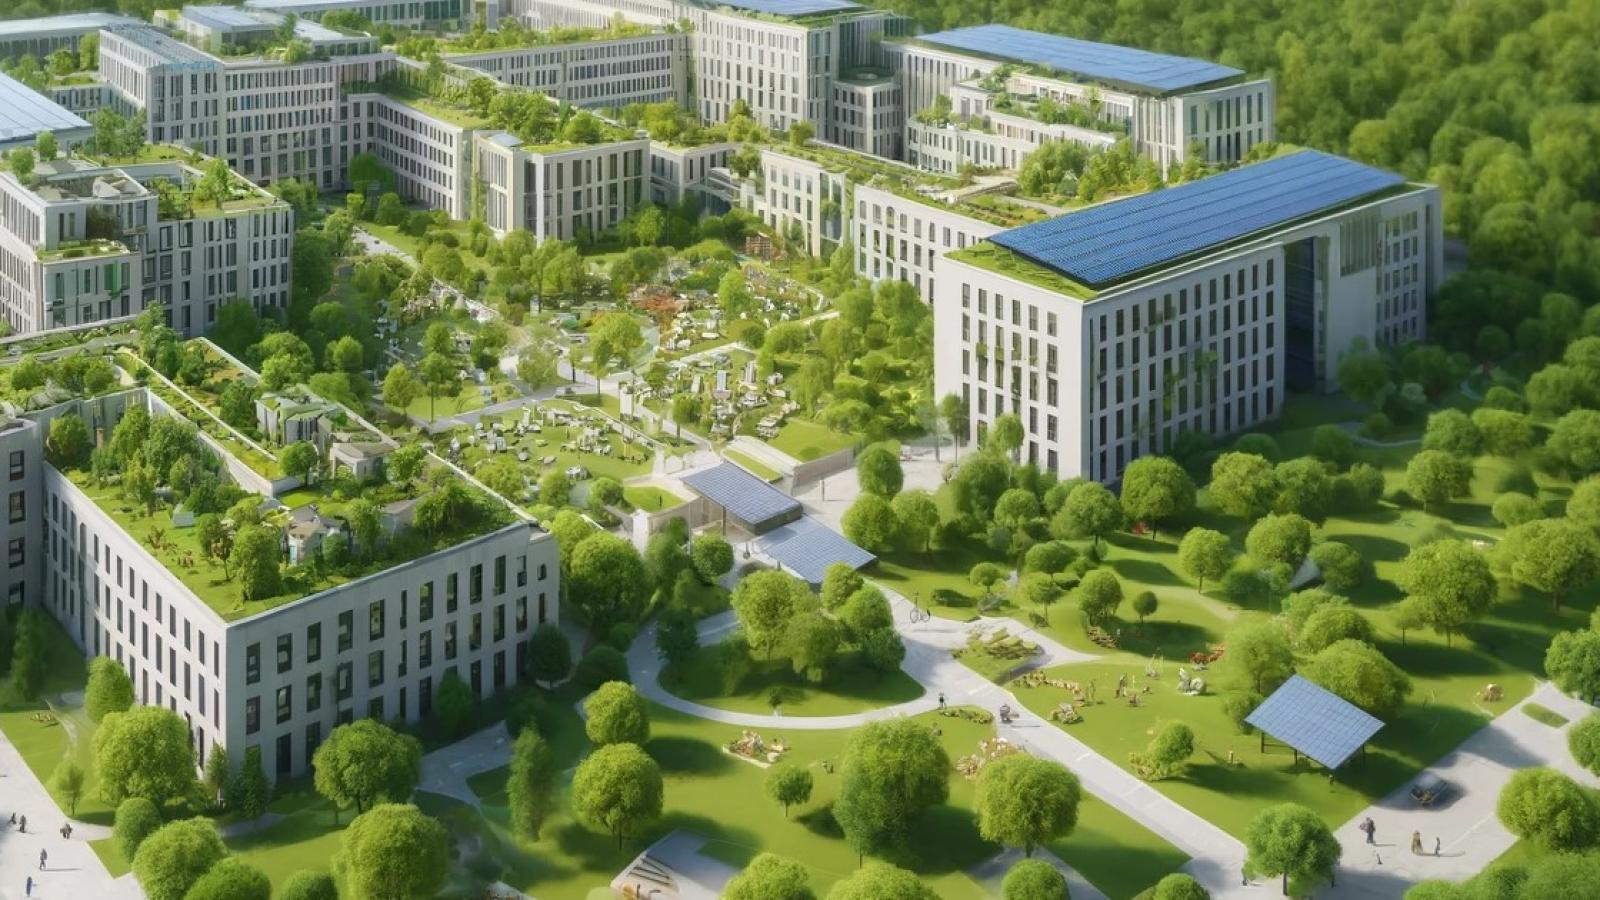 Un grande ospedale formato da più edifici immersi nel verde, con alberi e aiuole e pannelli solare sui tetti.